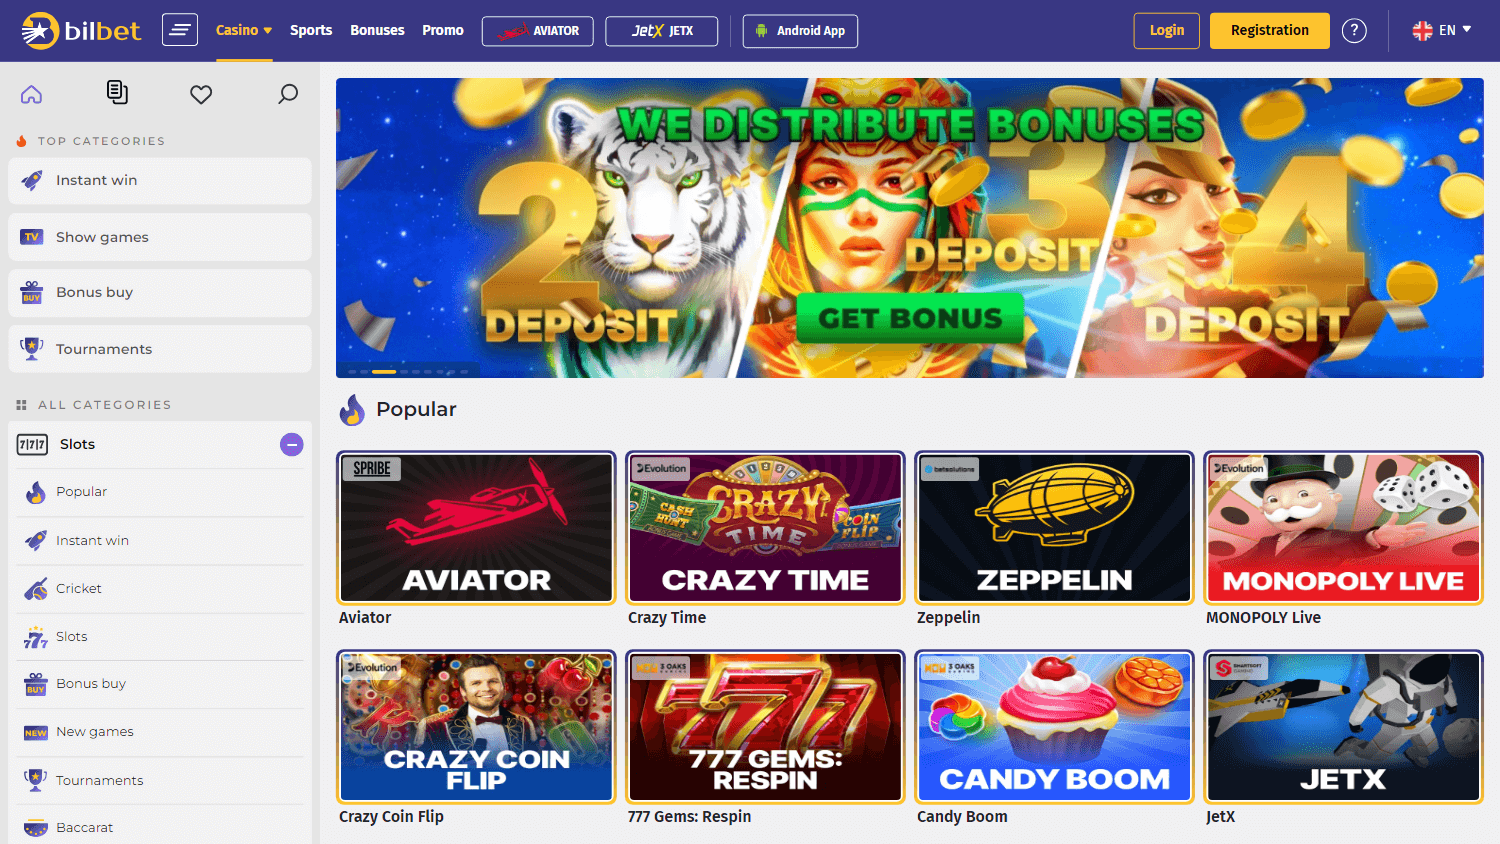 bilbet_casino_homepage_desktop